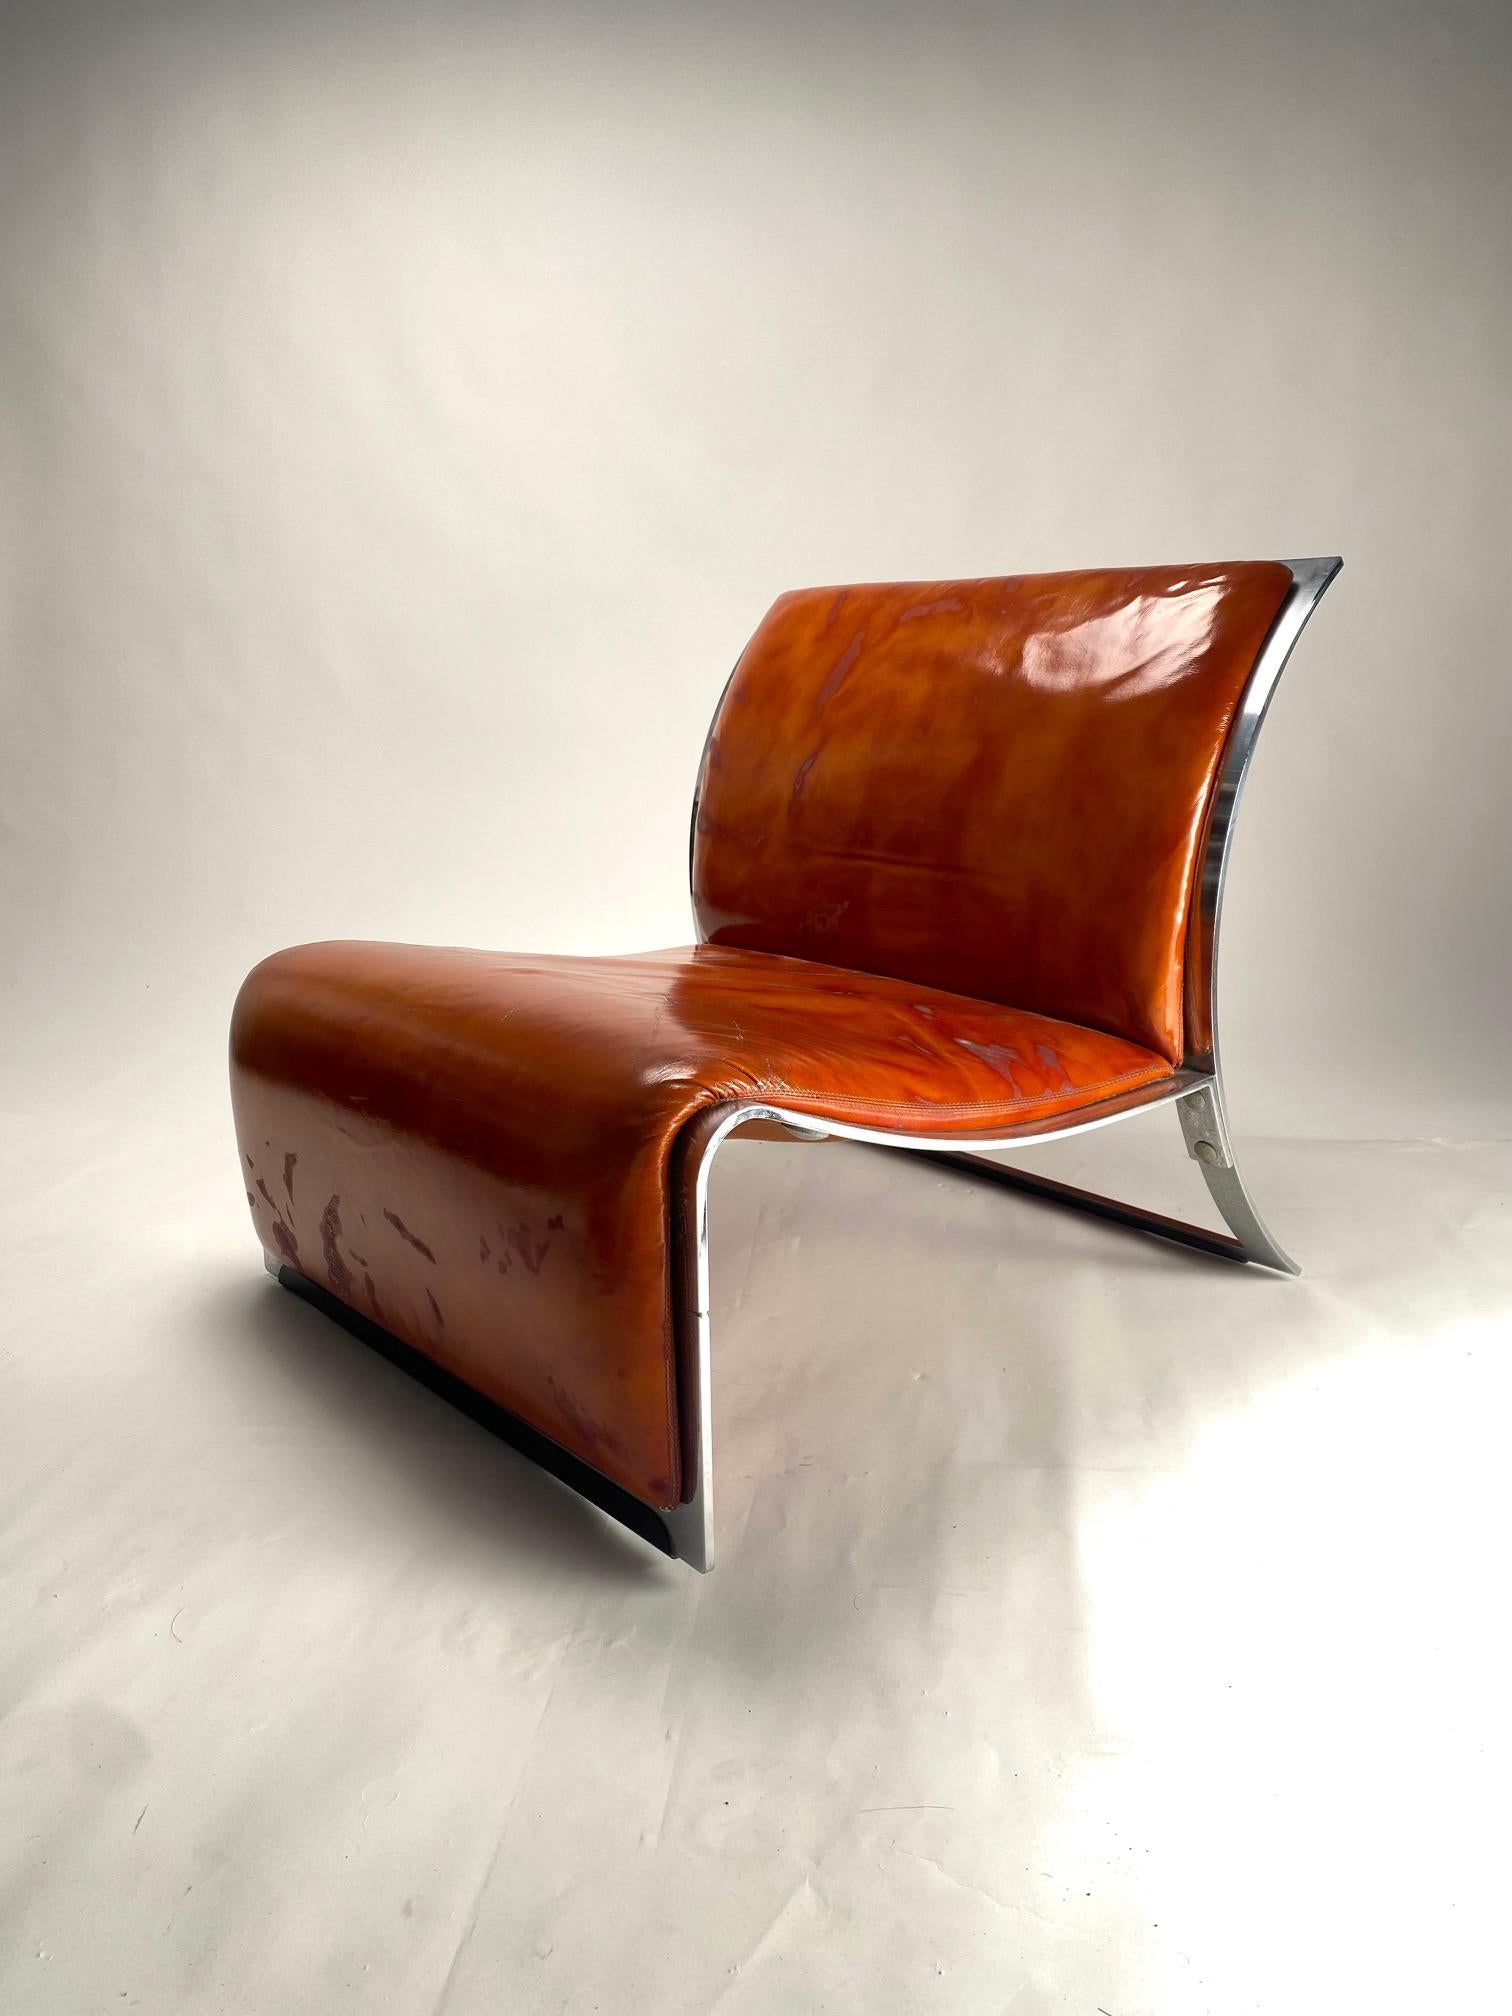 Vittorio Introini

Paire de fauteuils en métal chromé et cuir, pour Saporiti,  Italie 1965.

Mesures : 67,00 x 72,00 x 75,00 cm